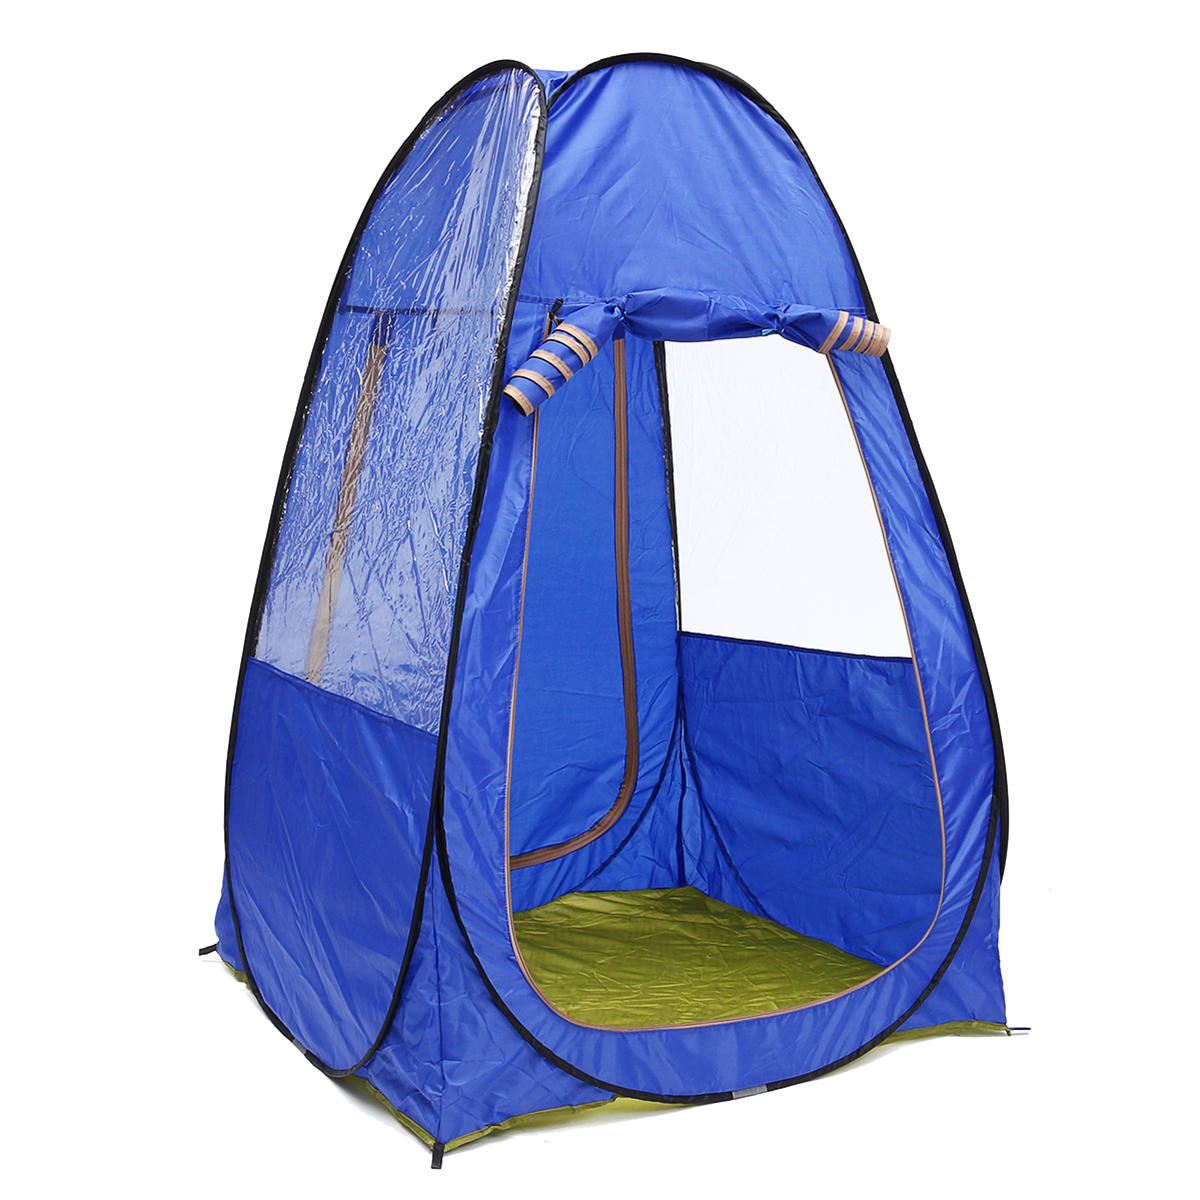 Tente de camping portable pour 1-2 personnes, pliable, résistante aux UV, imperméable, avec auvent pare-soleil